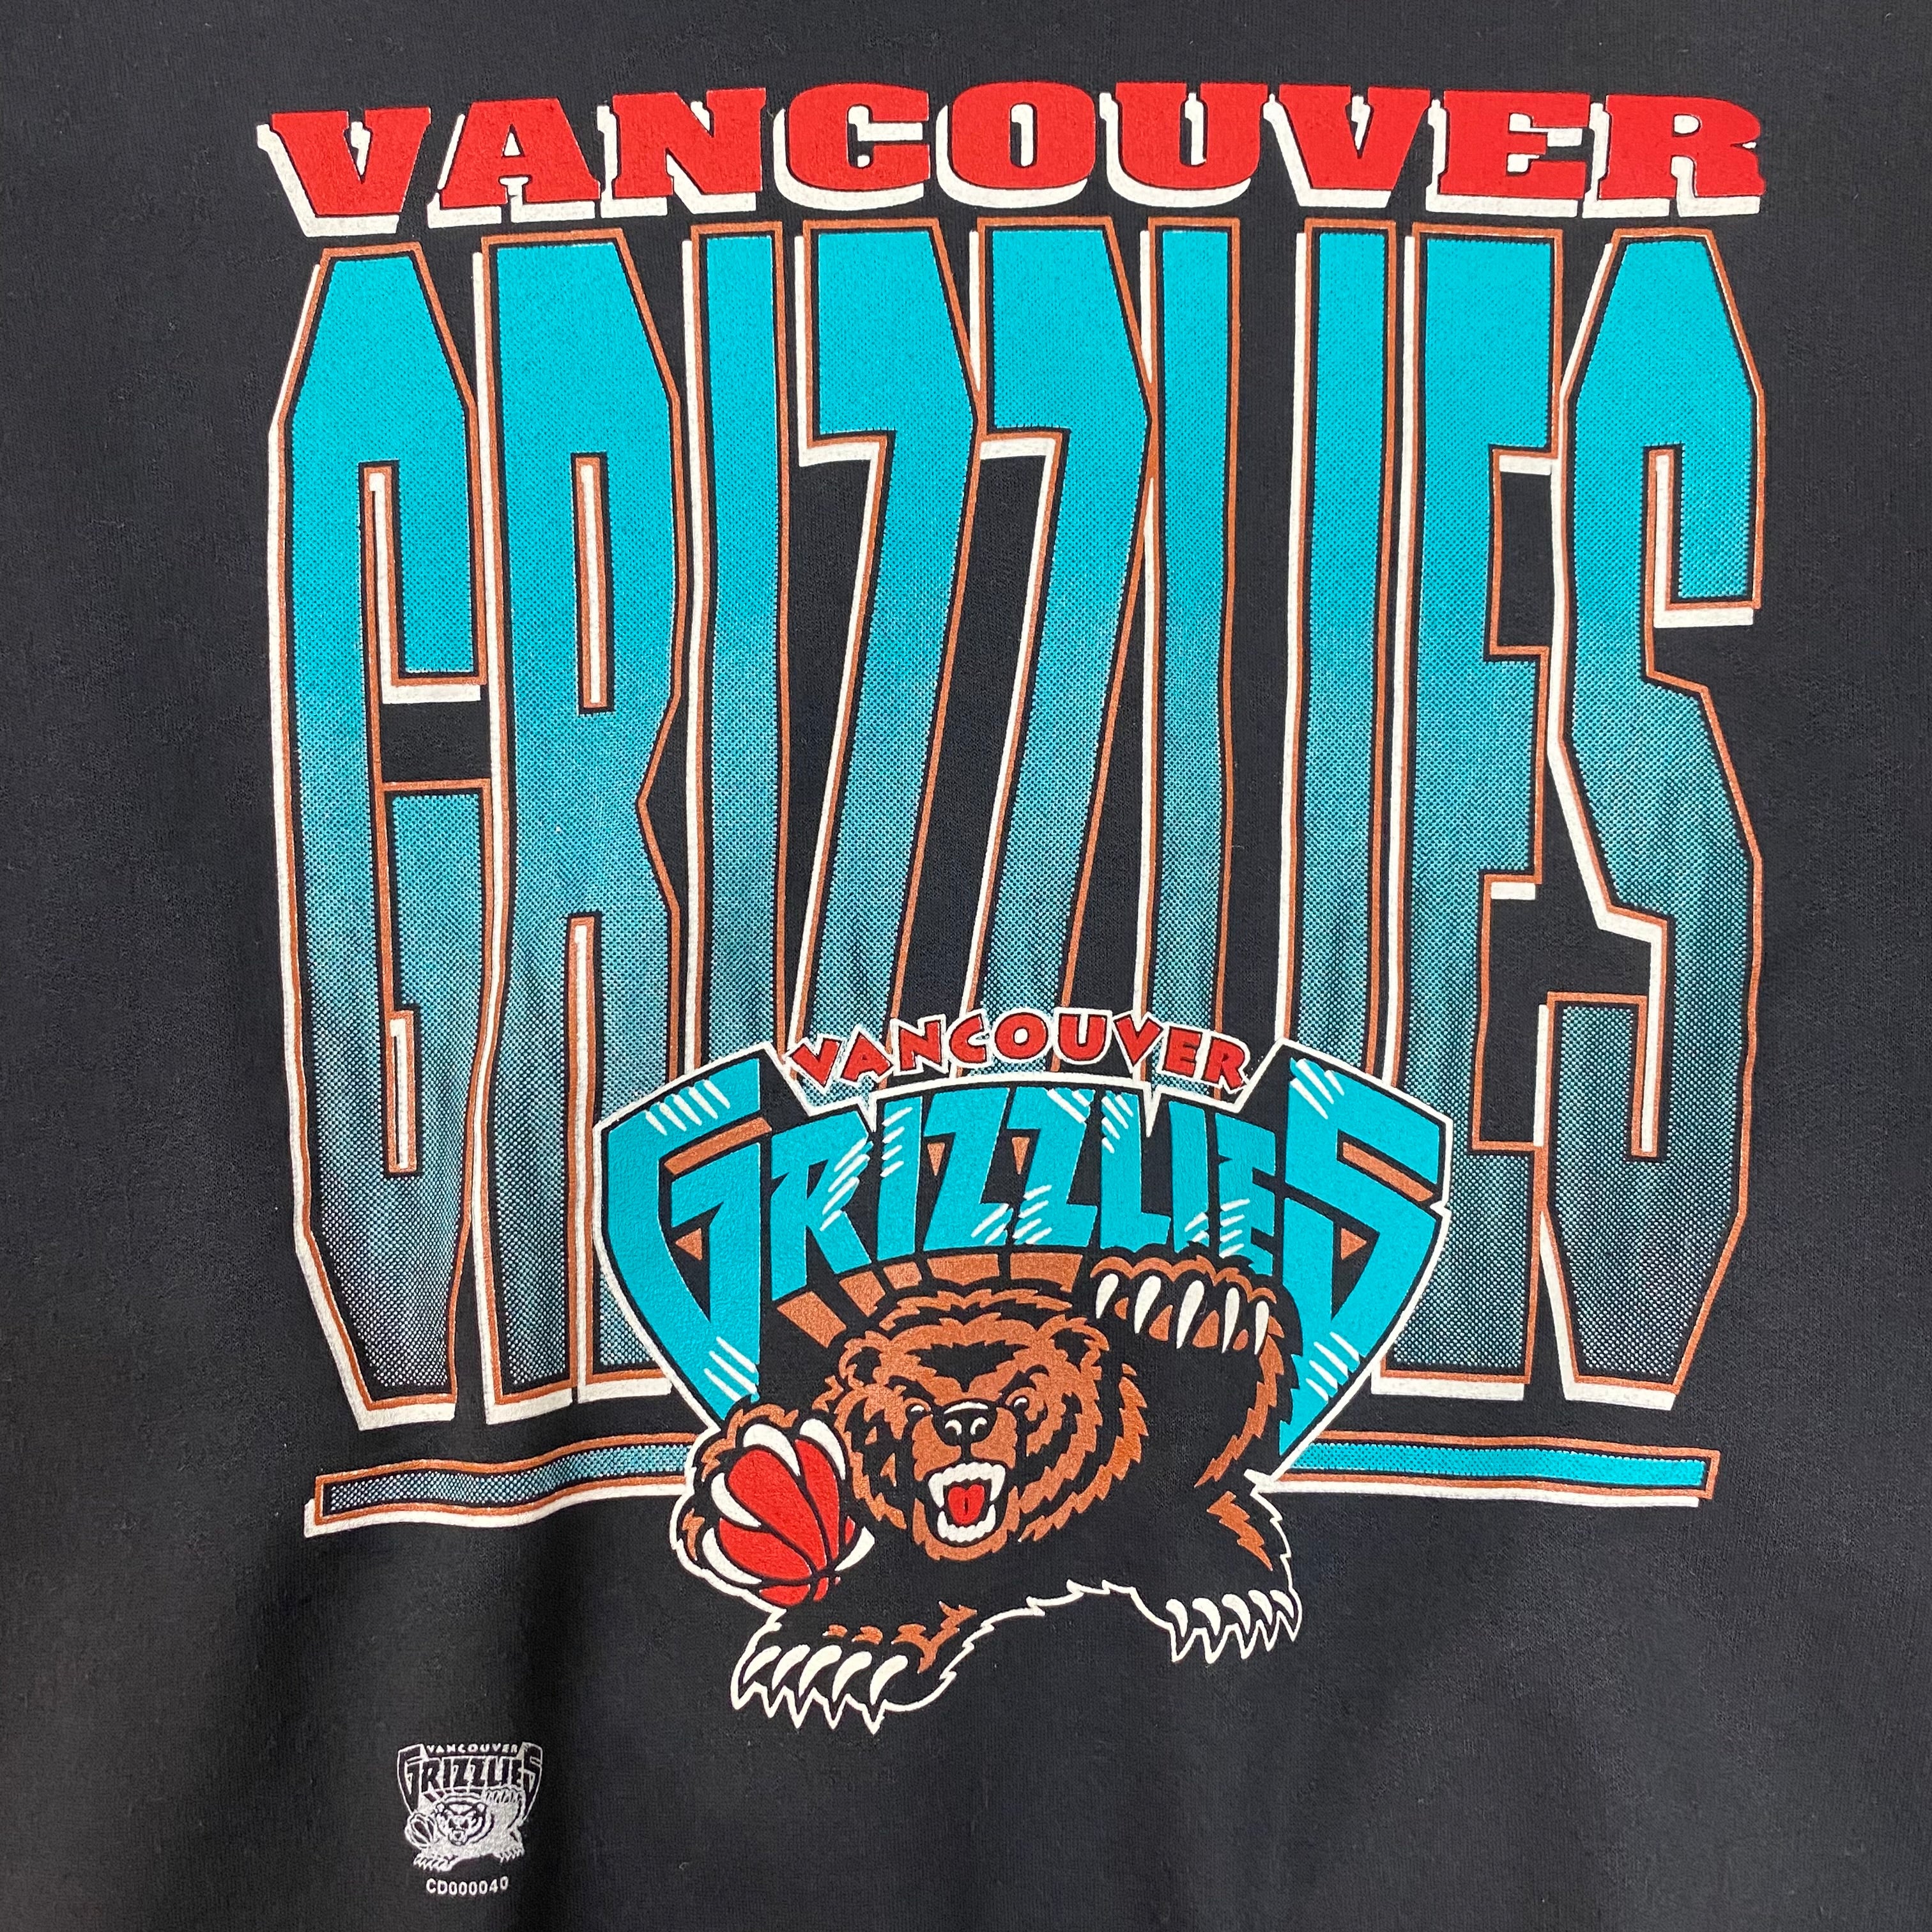 Vintage Vancouver Grizzlies Crewneck Black